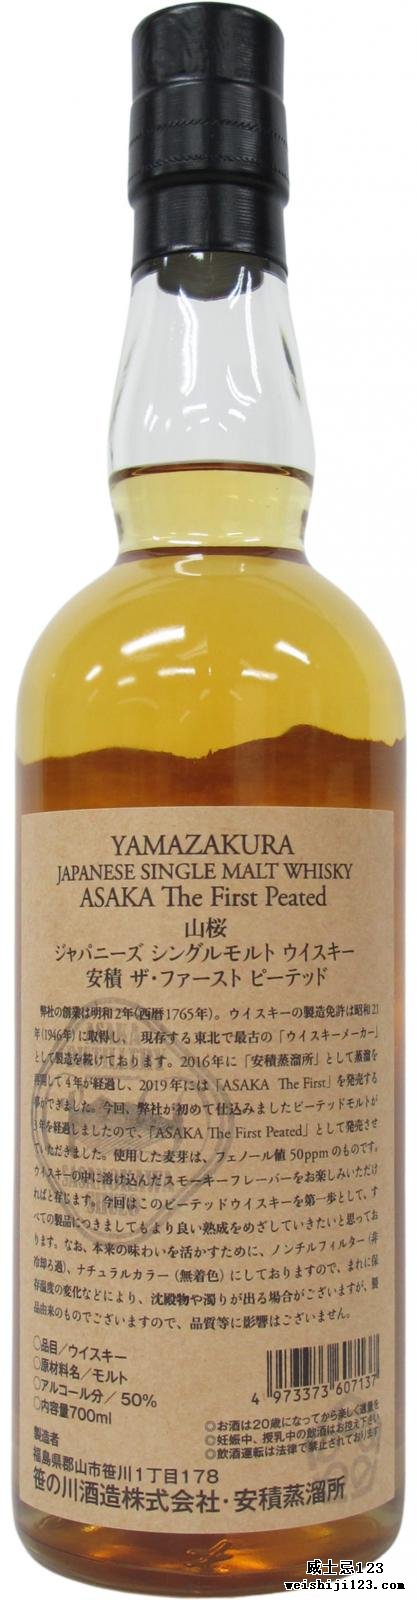 Yamazakura Asaka The First Peated